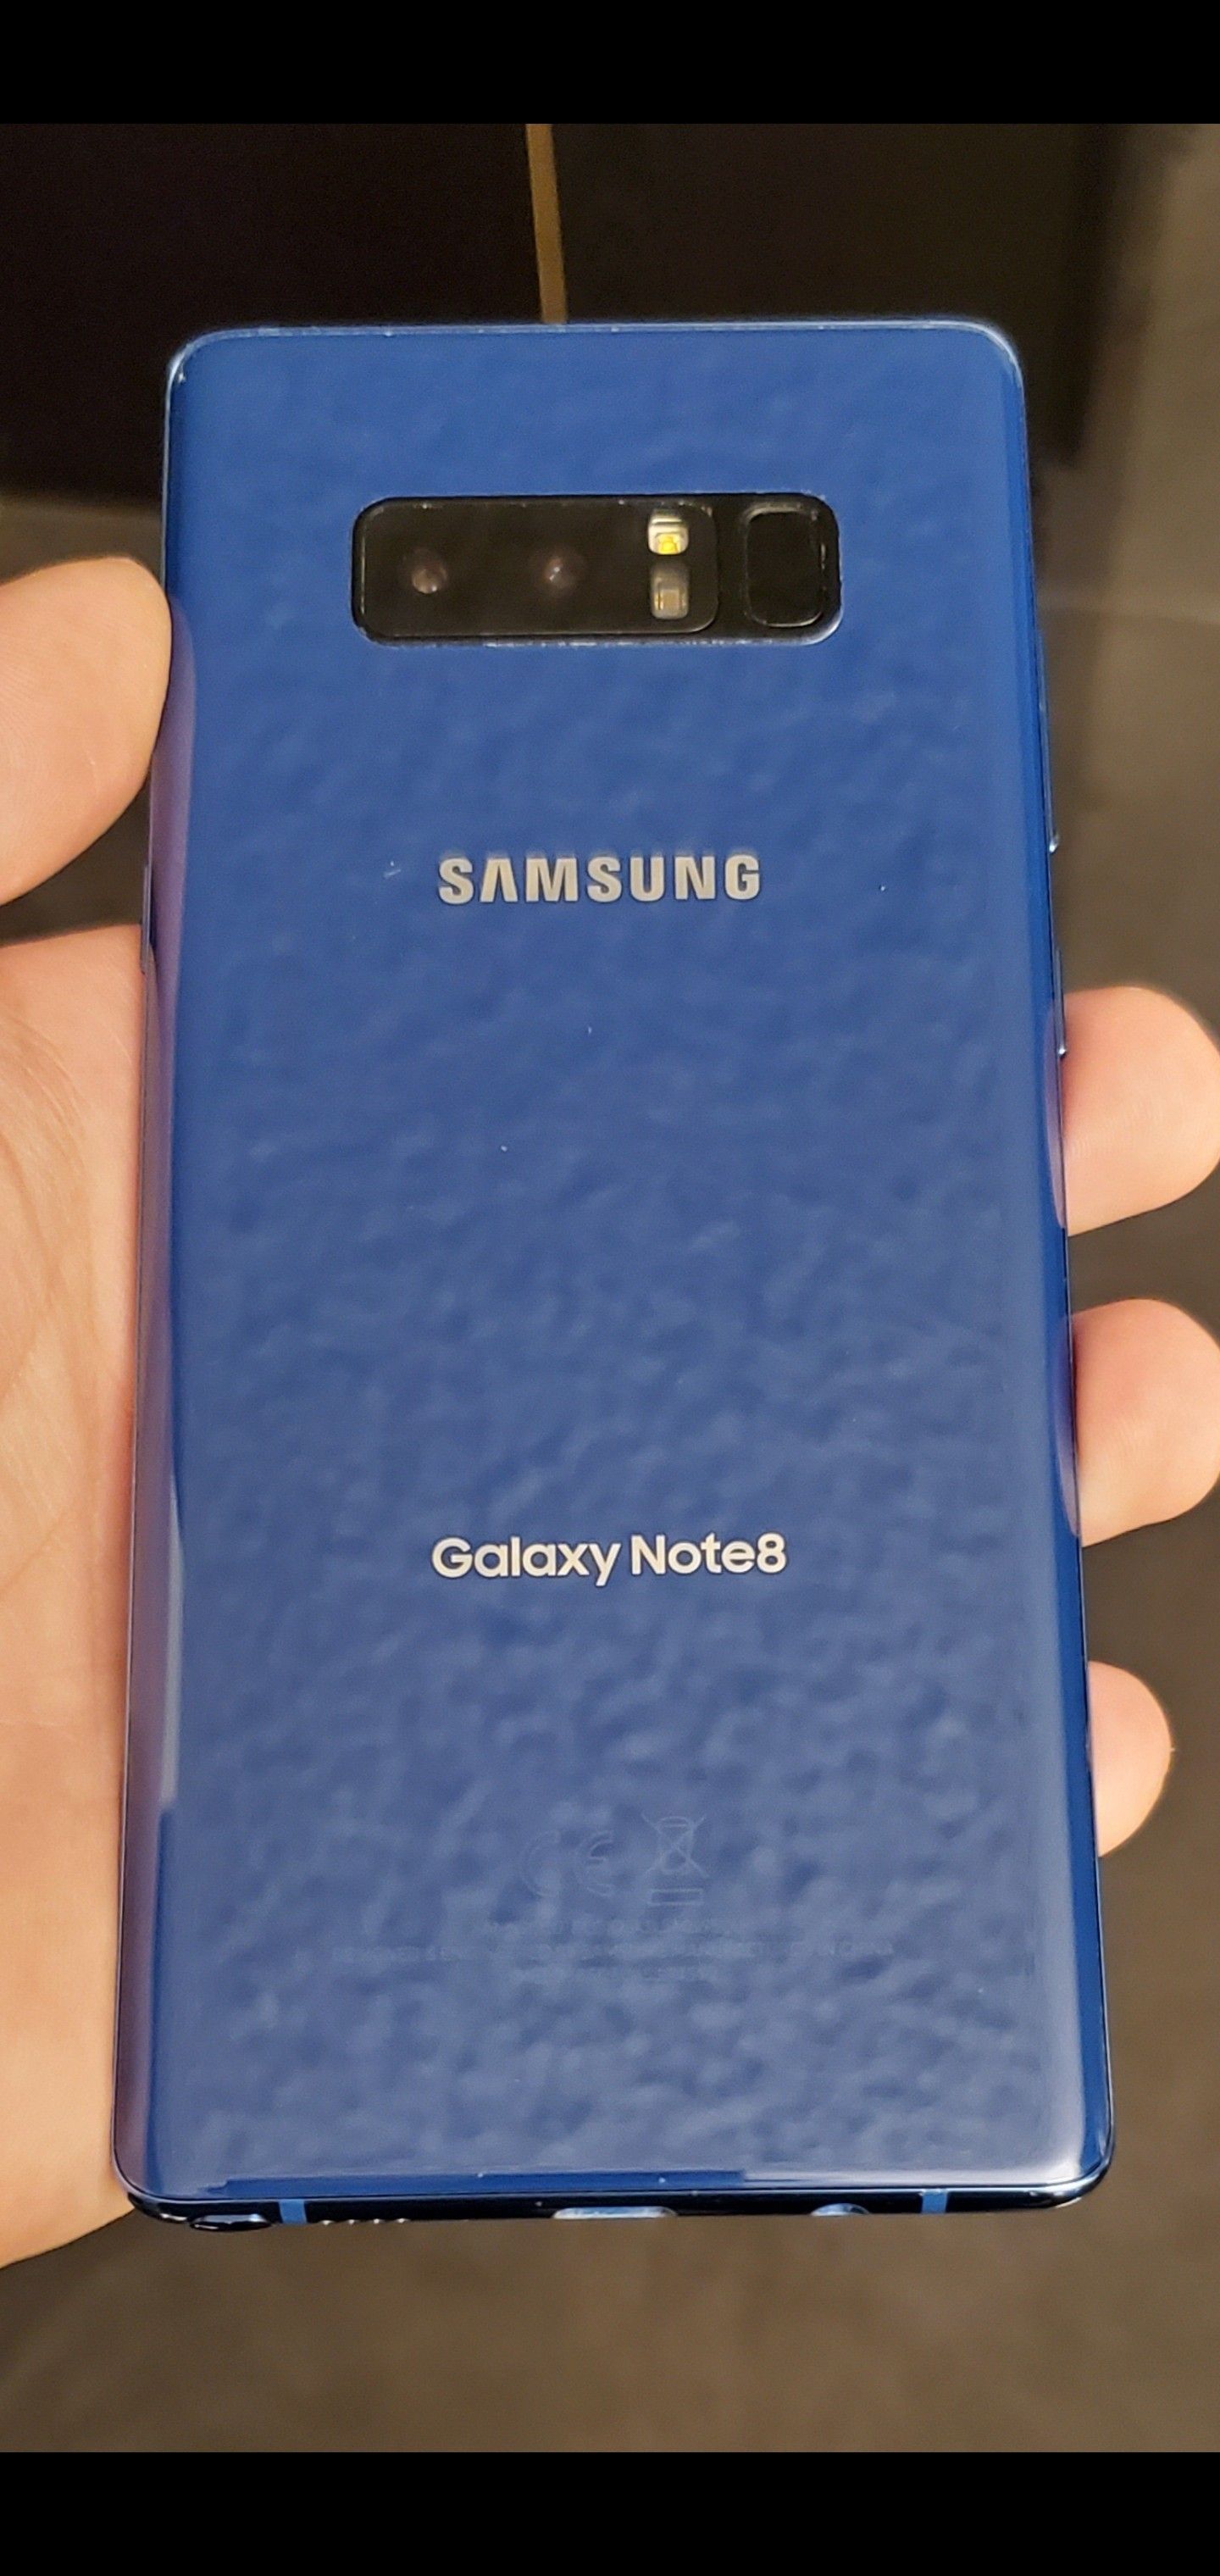 New Galaxy Note 8 64GB Samsung Unlocked Liberado DESBLOQUEADO T-Mobile Metro Att Cricket